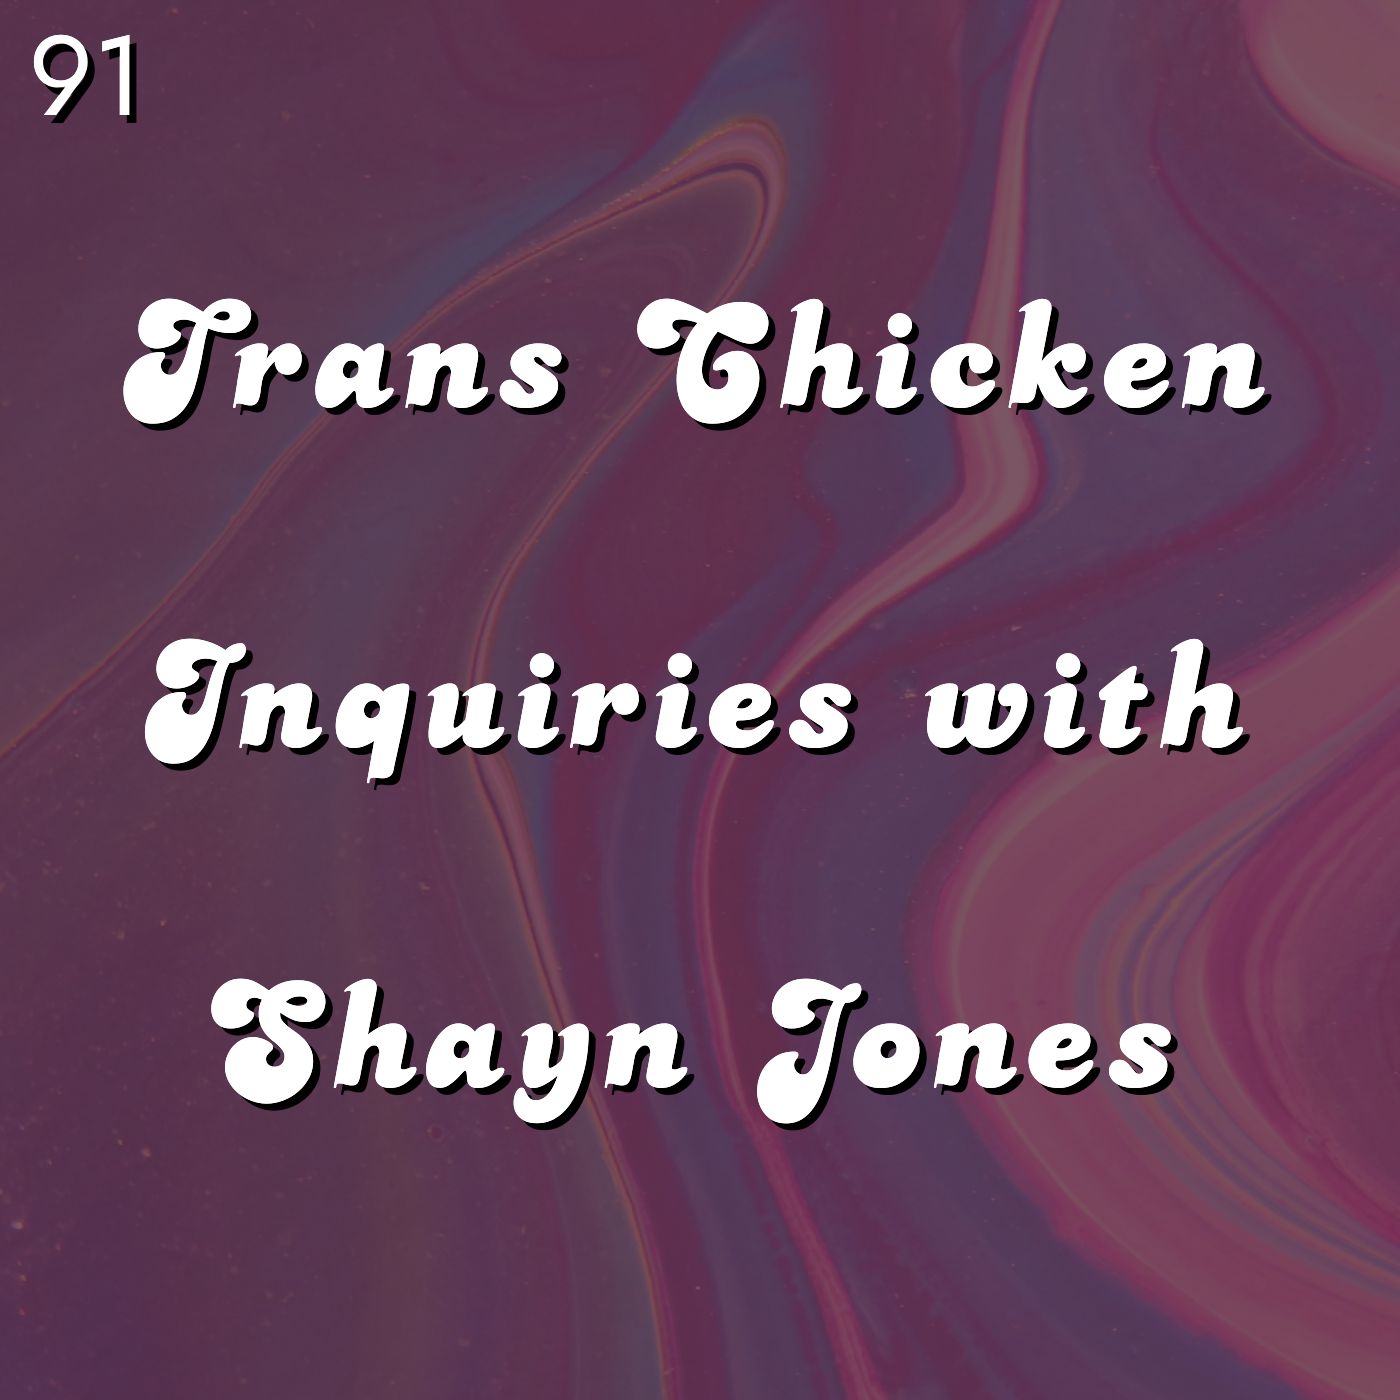 #91 - Trans Chicken Inquiries with Shayn Jones